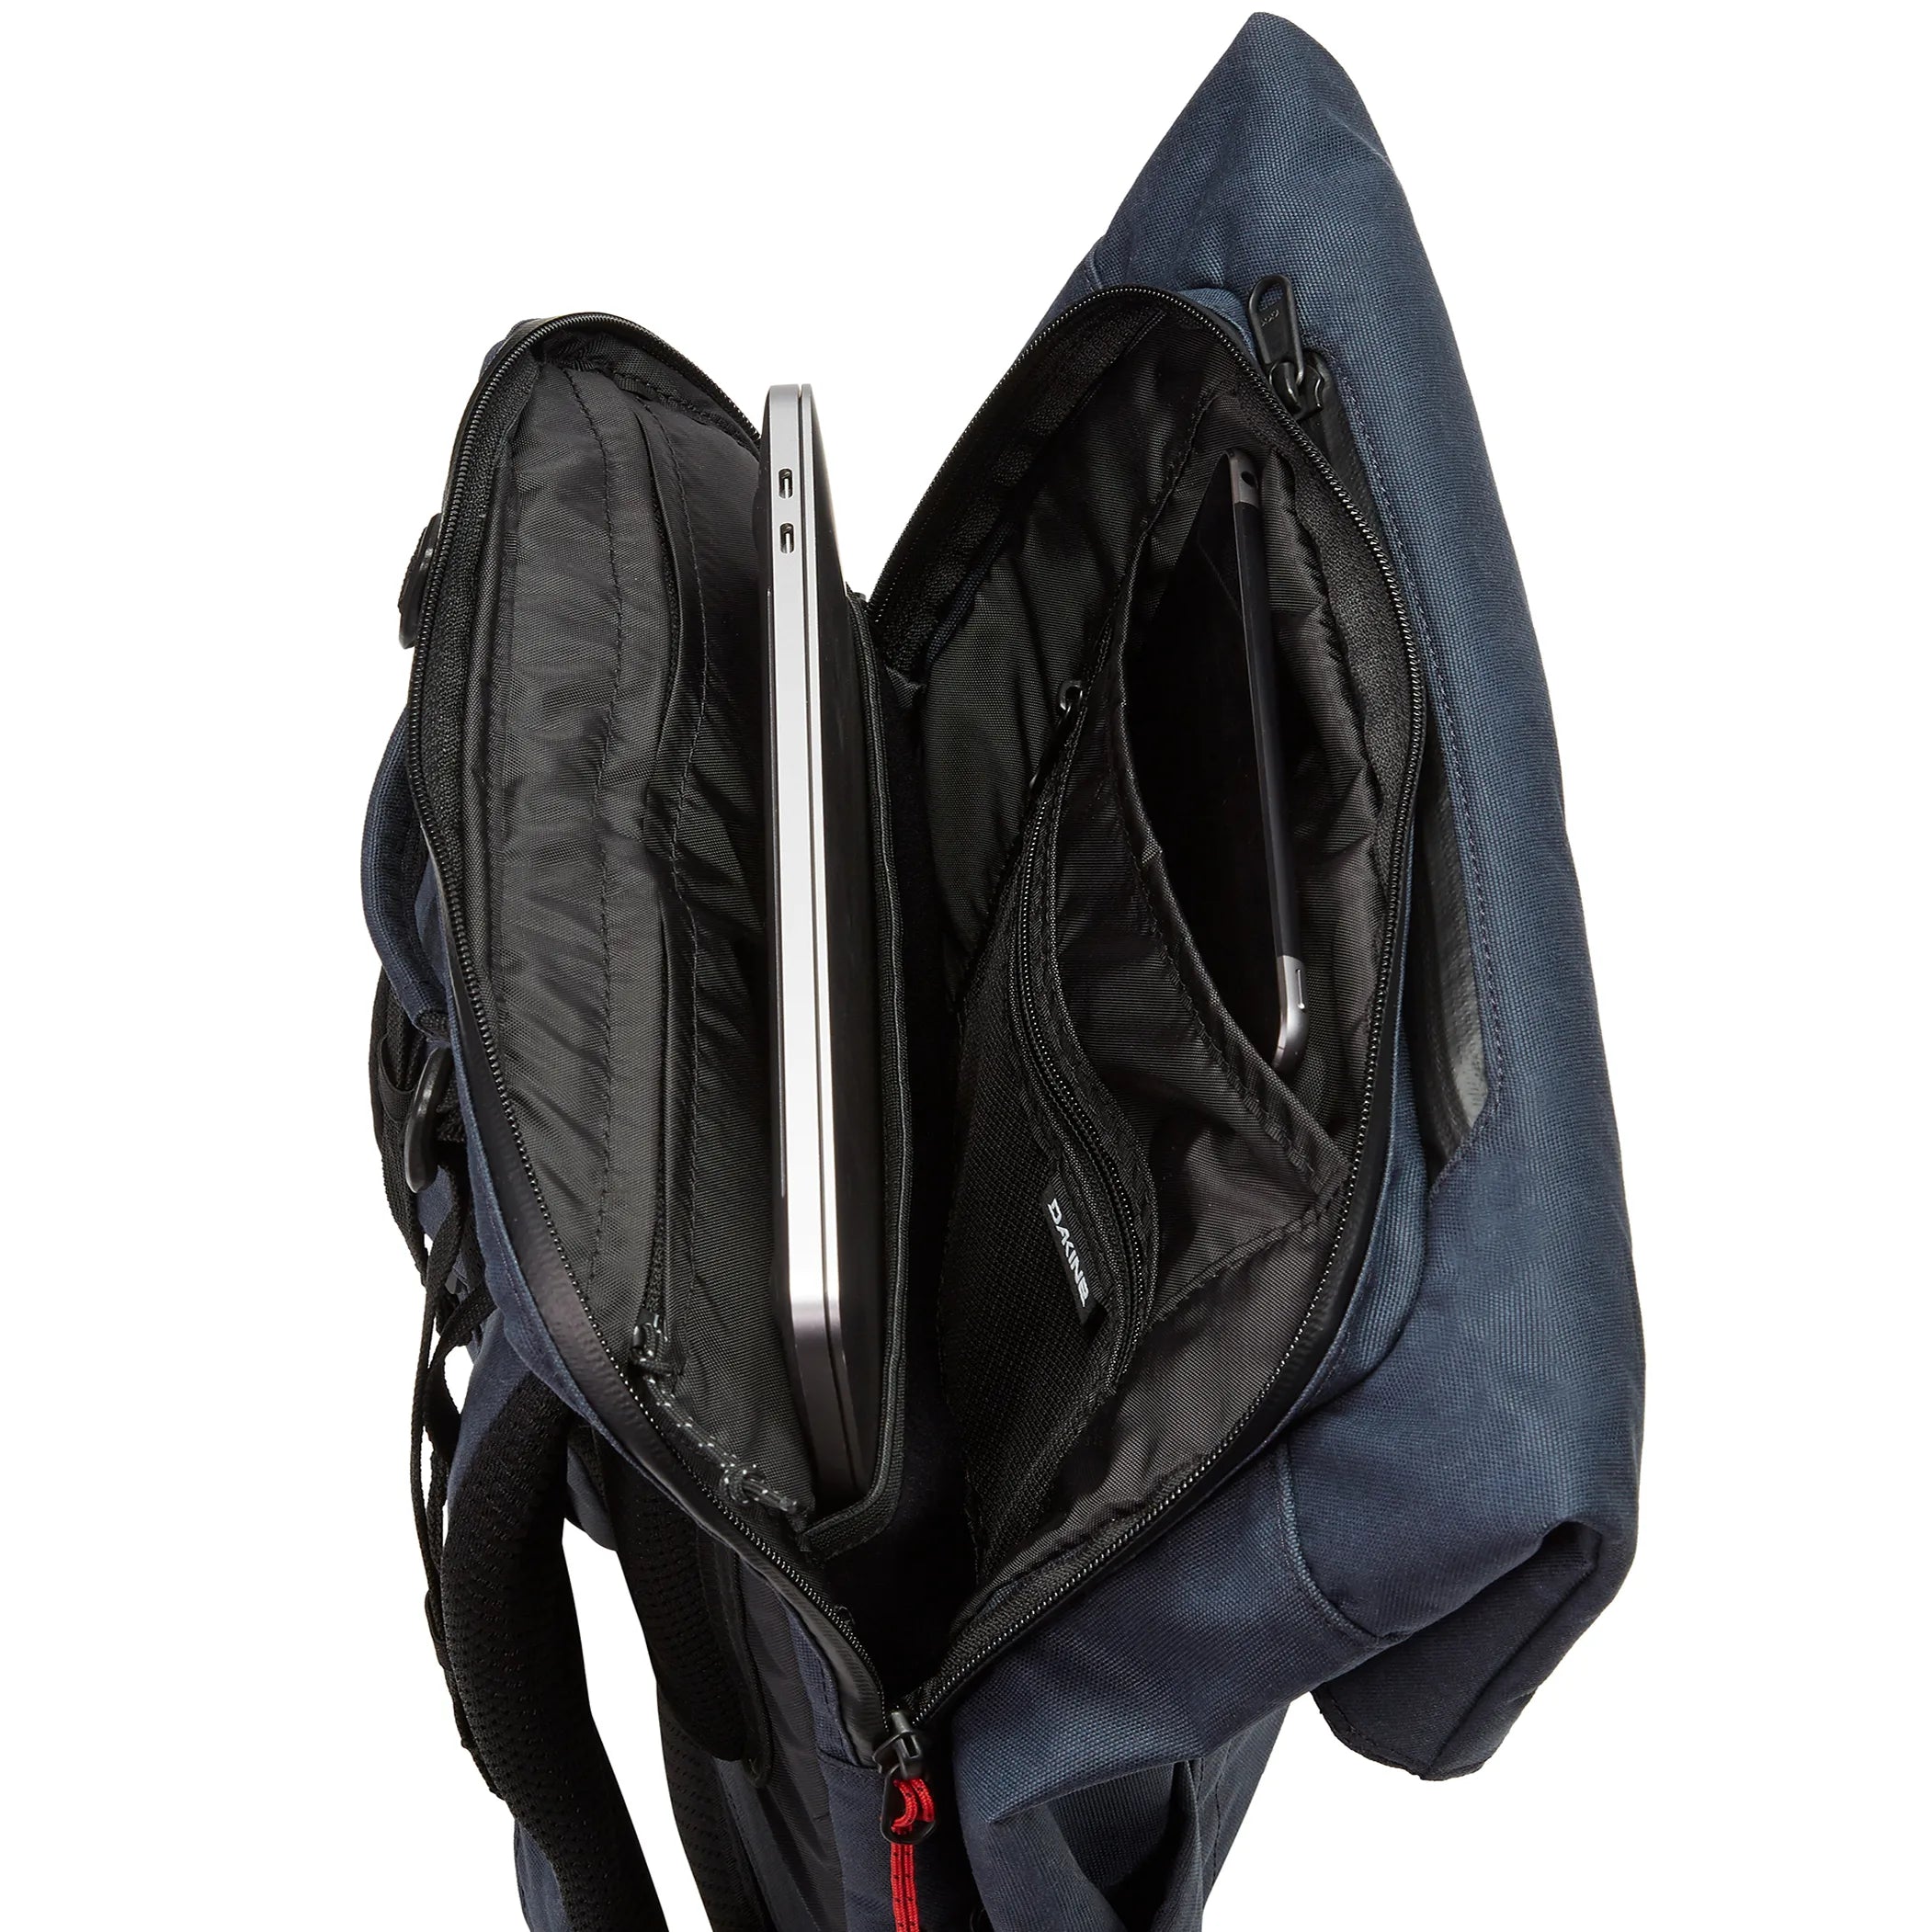 Dakine Packs & Bags Infinity Pack 21L Rucksack 46 cm - port red